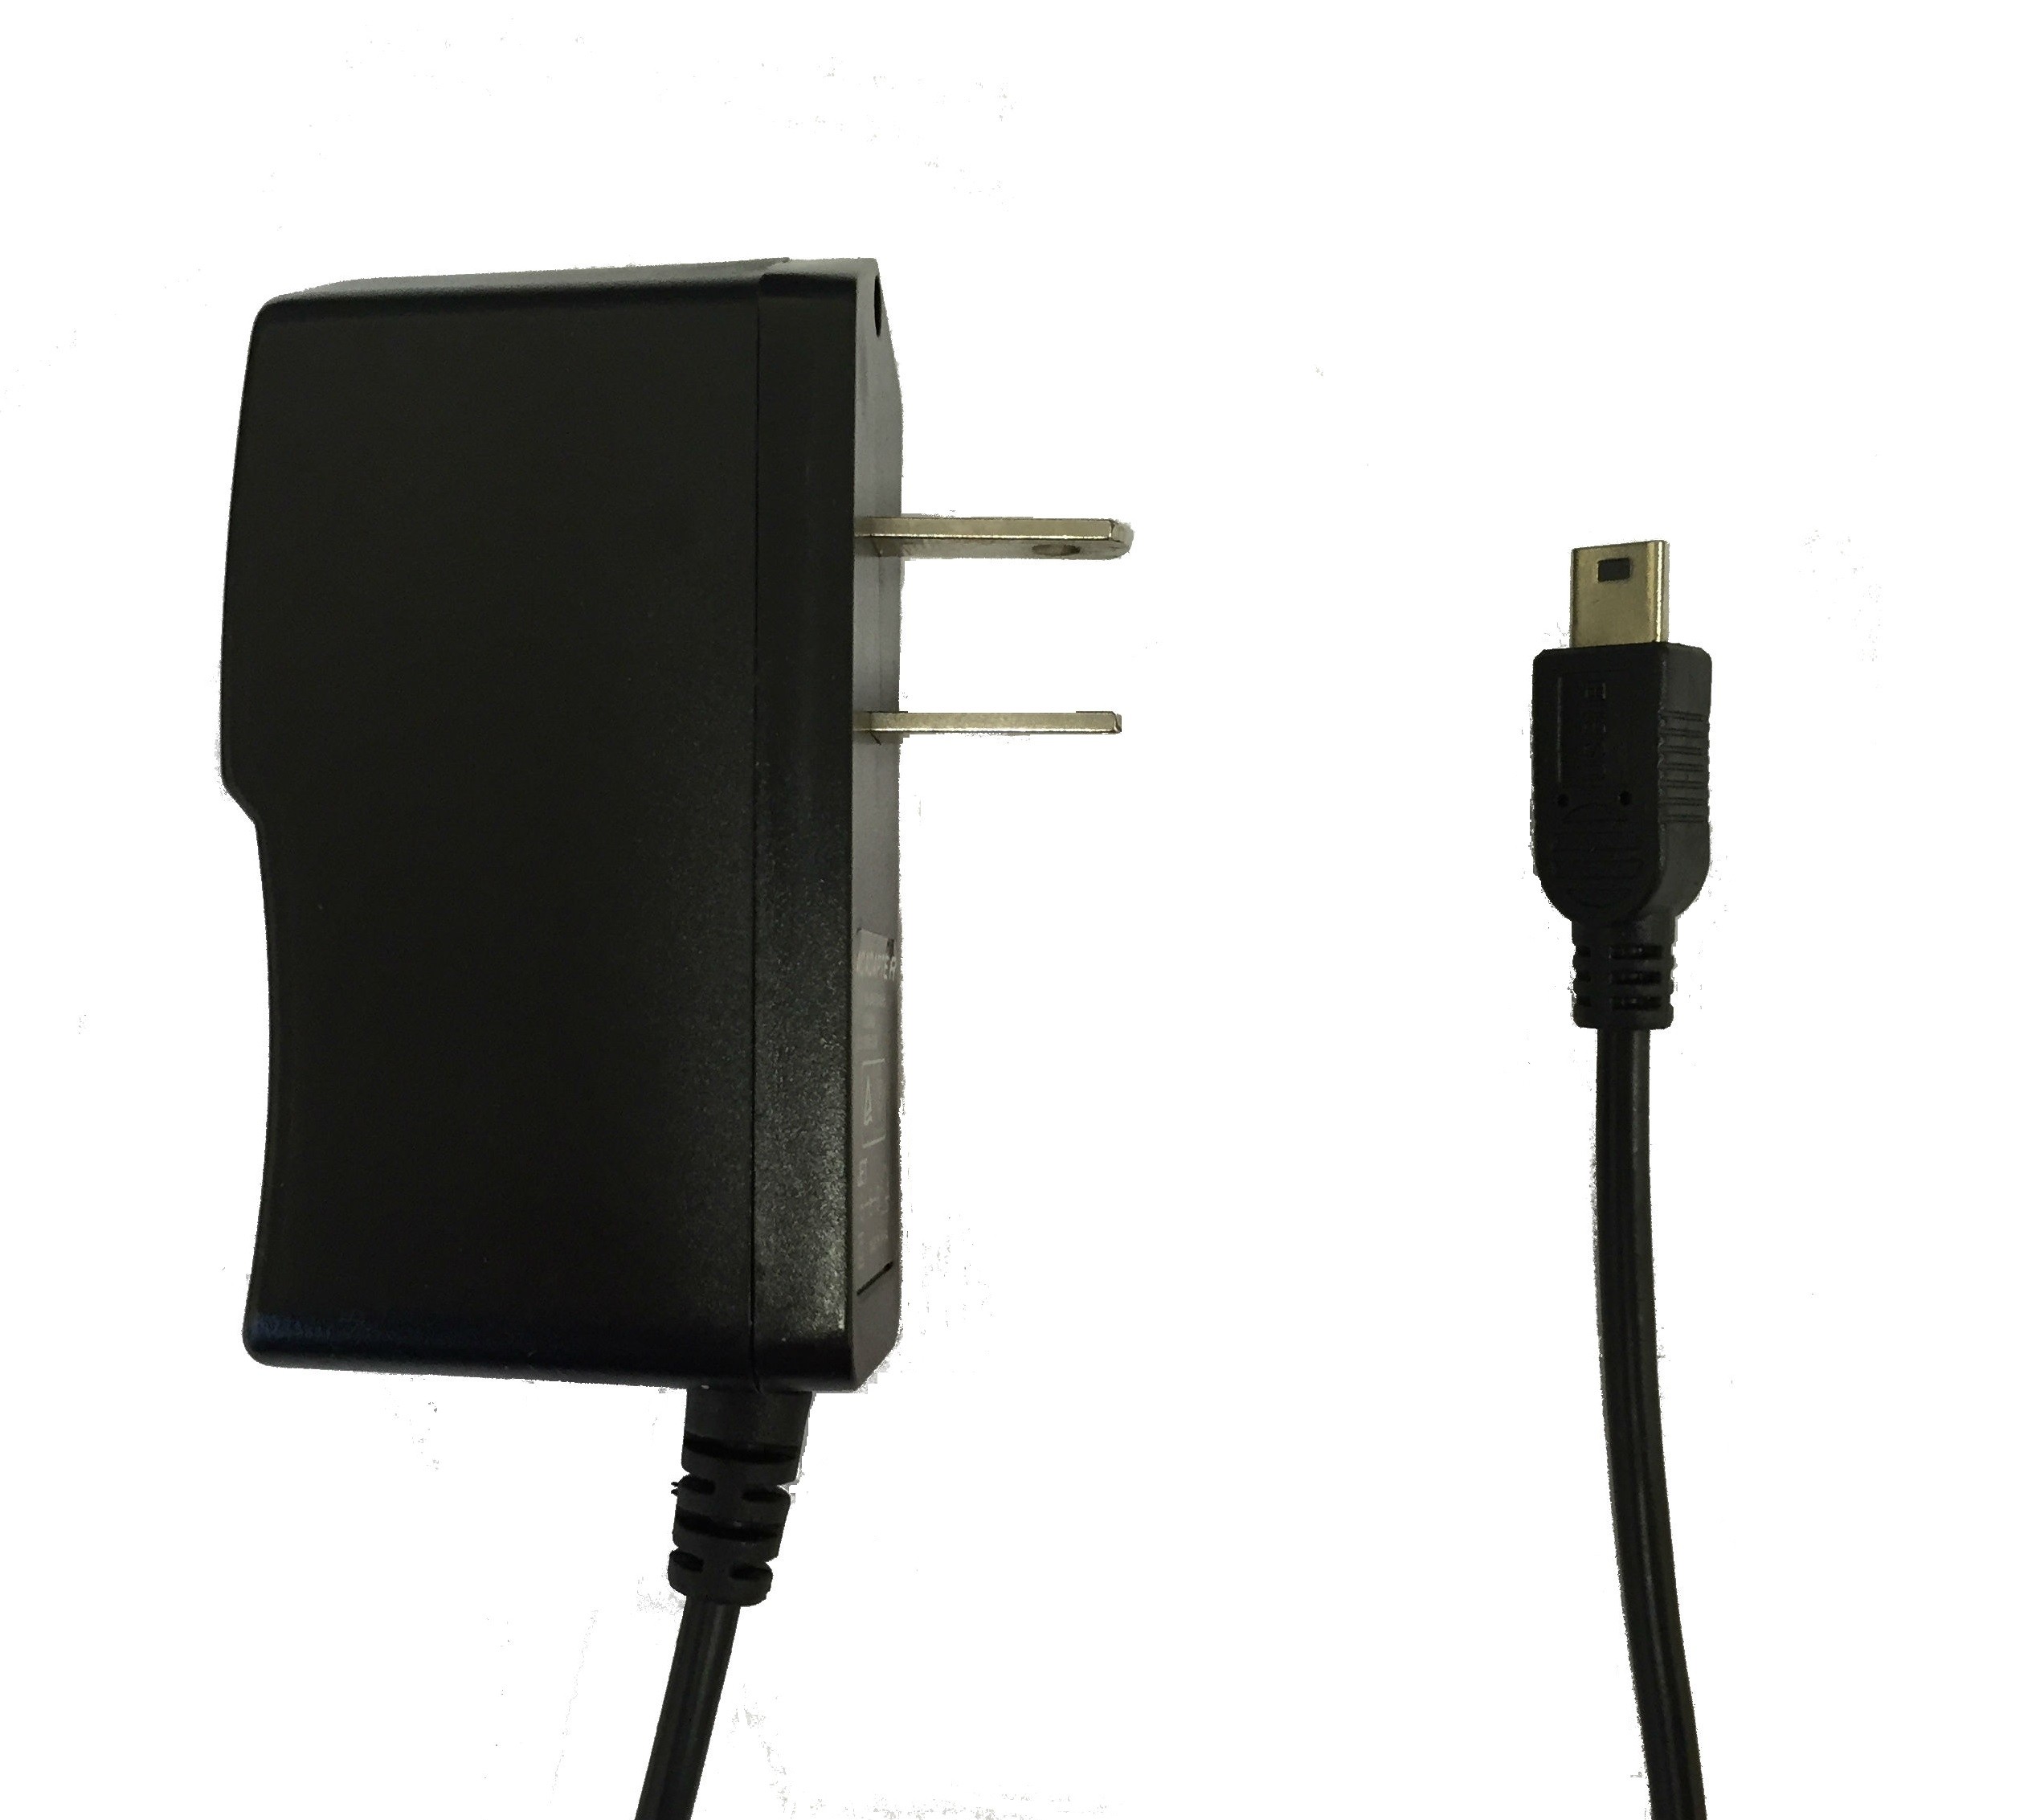  WorldNav USB AC Power for 4100 / 5300 GPS 